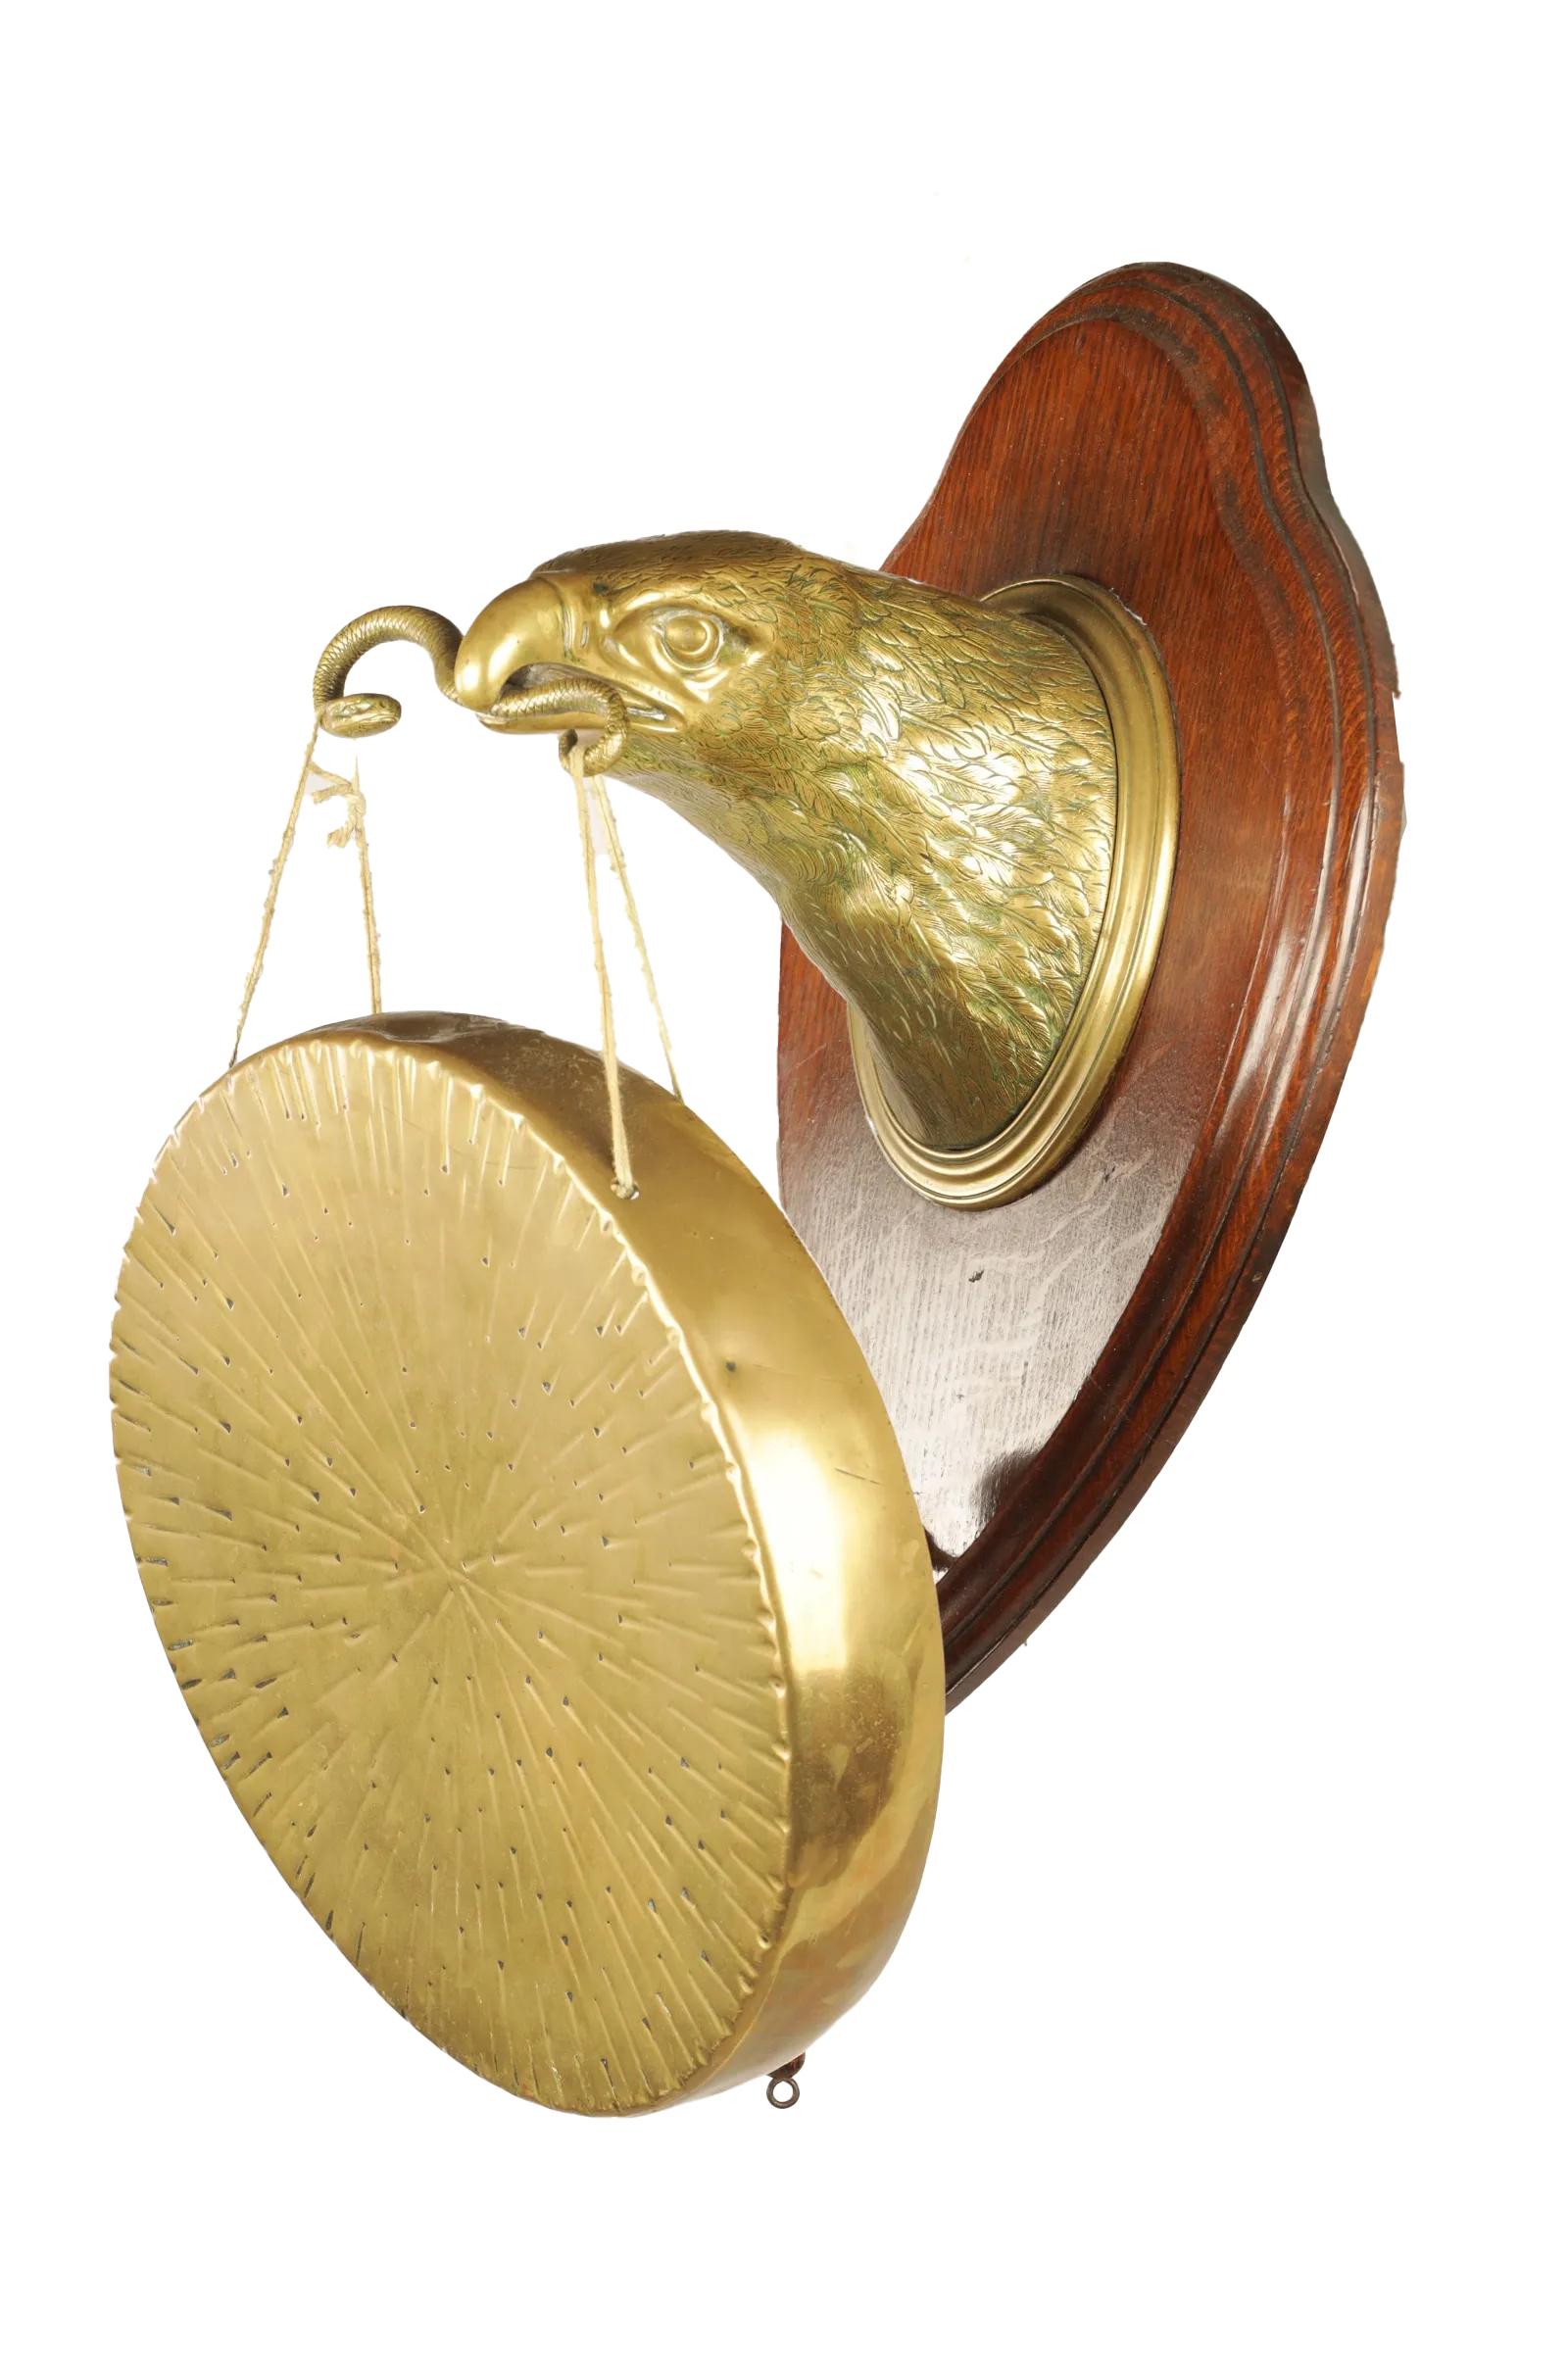 Gong de table de William Tonks & Sons (estampillé au dos), d'époque Arts and Crafts anglaise. Tête d'aigle en laiton ou en bronze bien fondu, montée sur une plaque de chêne en forme de bouclier et tenant un serpent dans son bec. Le serpent forme les